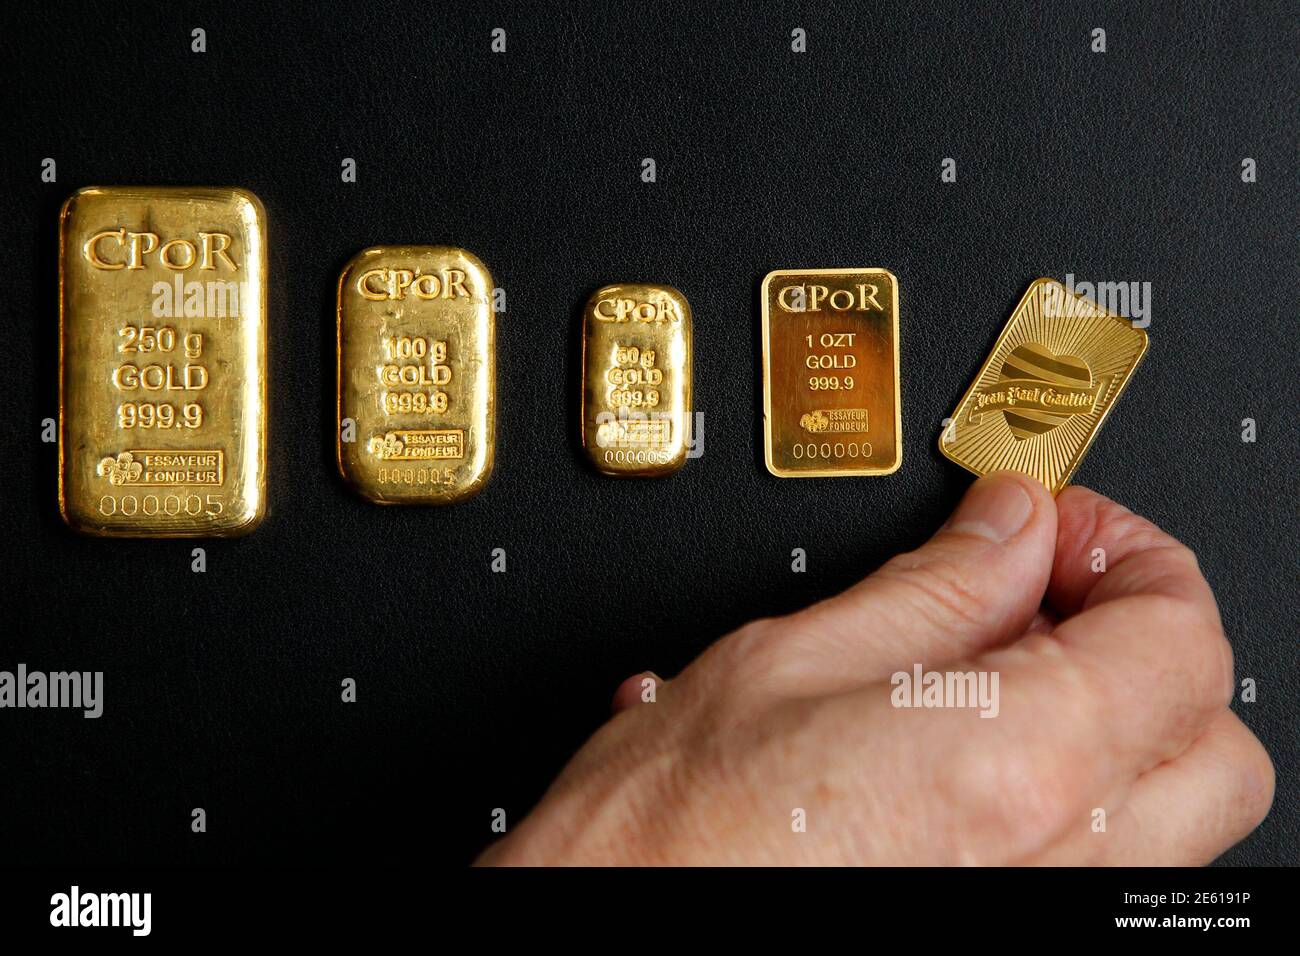 Eine Unze Gramm Gold bar (Top R) Fashion Designers Gaultier ist mit  Goldbarren mit einem Gewicht von 1 Unze und 500 Gramm in einem Büro des  französischen Goldlieferant CPoR entwirft Unternehmen in